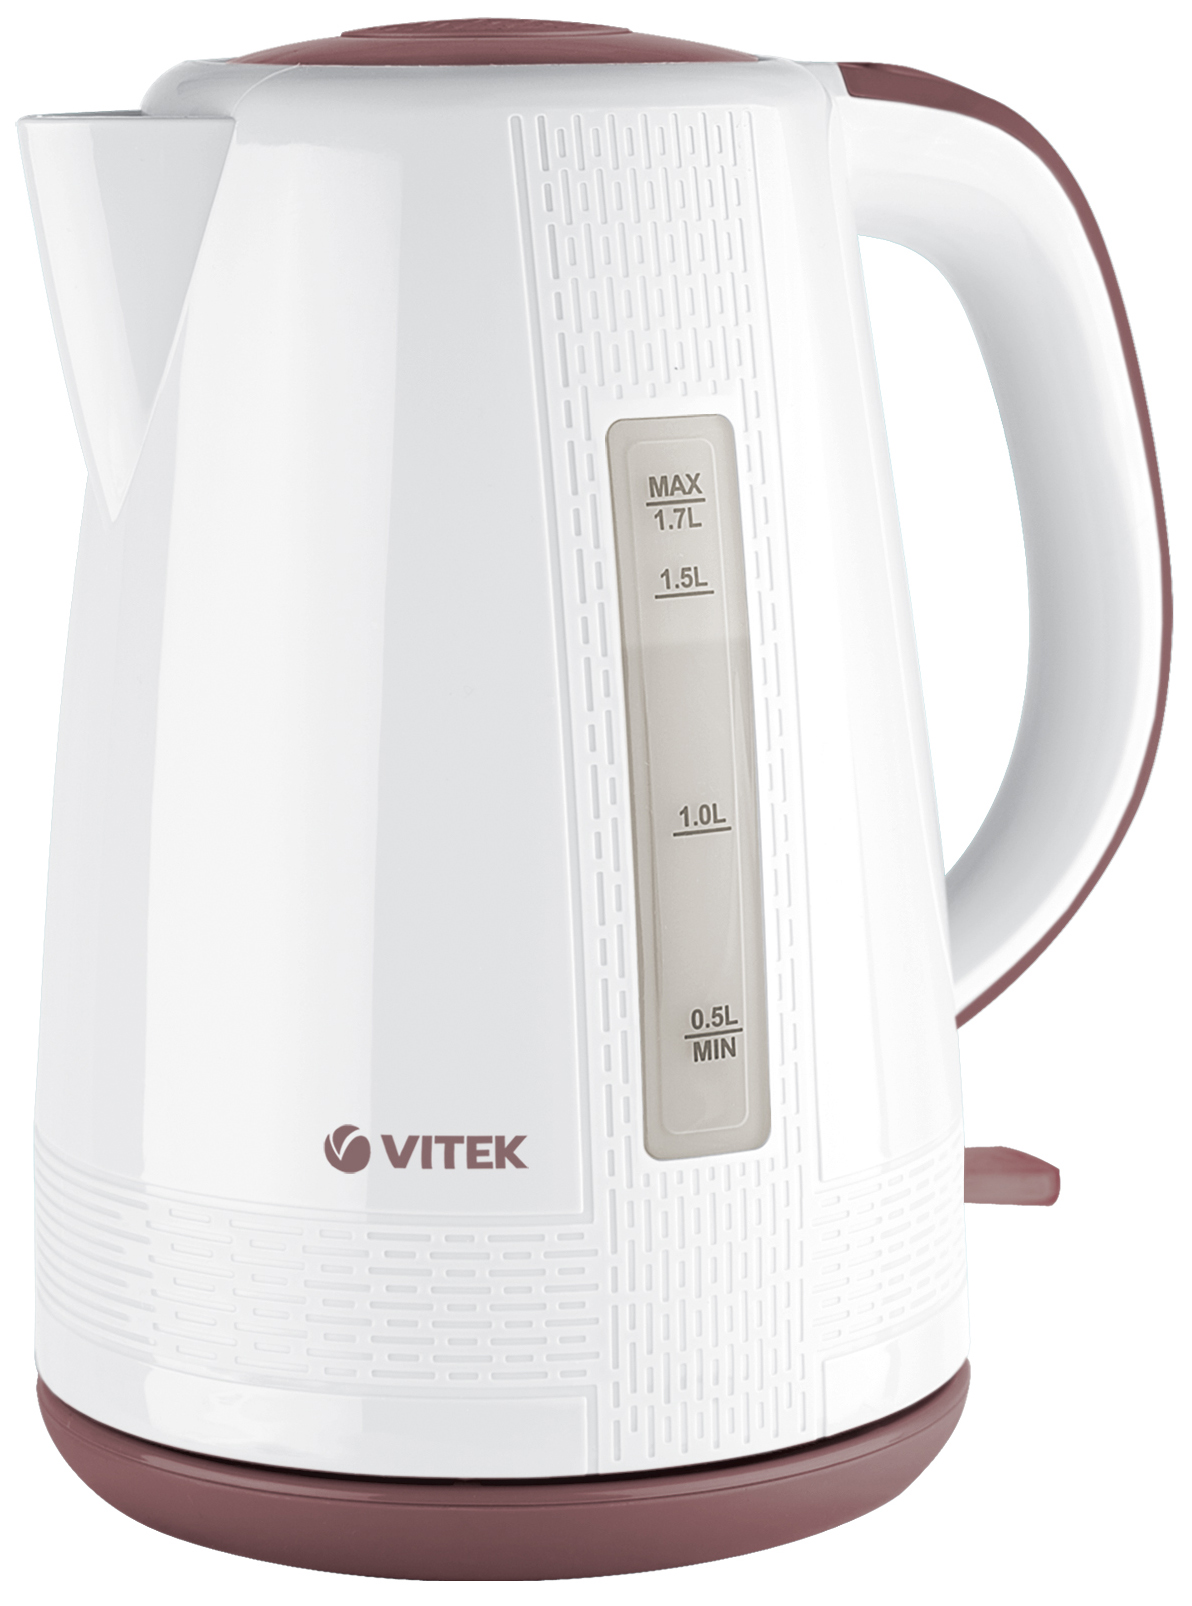 Чайник электрический VITEK VT-7055 1.7 л белый, коричневый фен starwind sht4517 1 600 вт коричневый белый